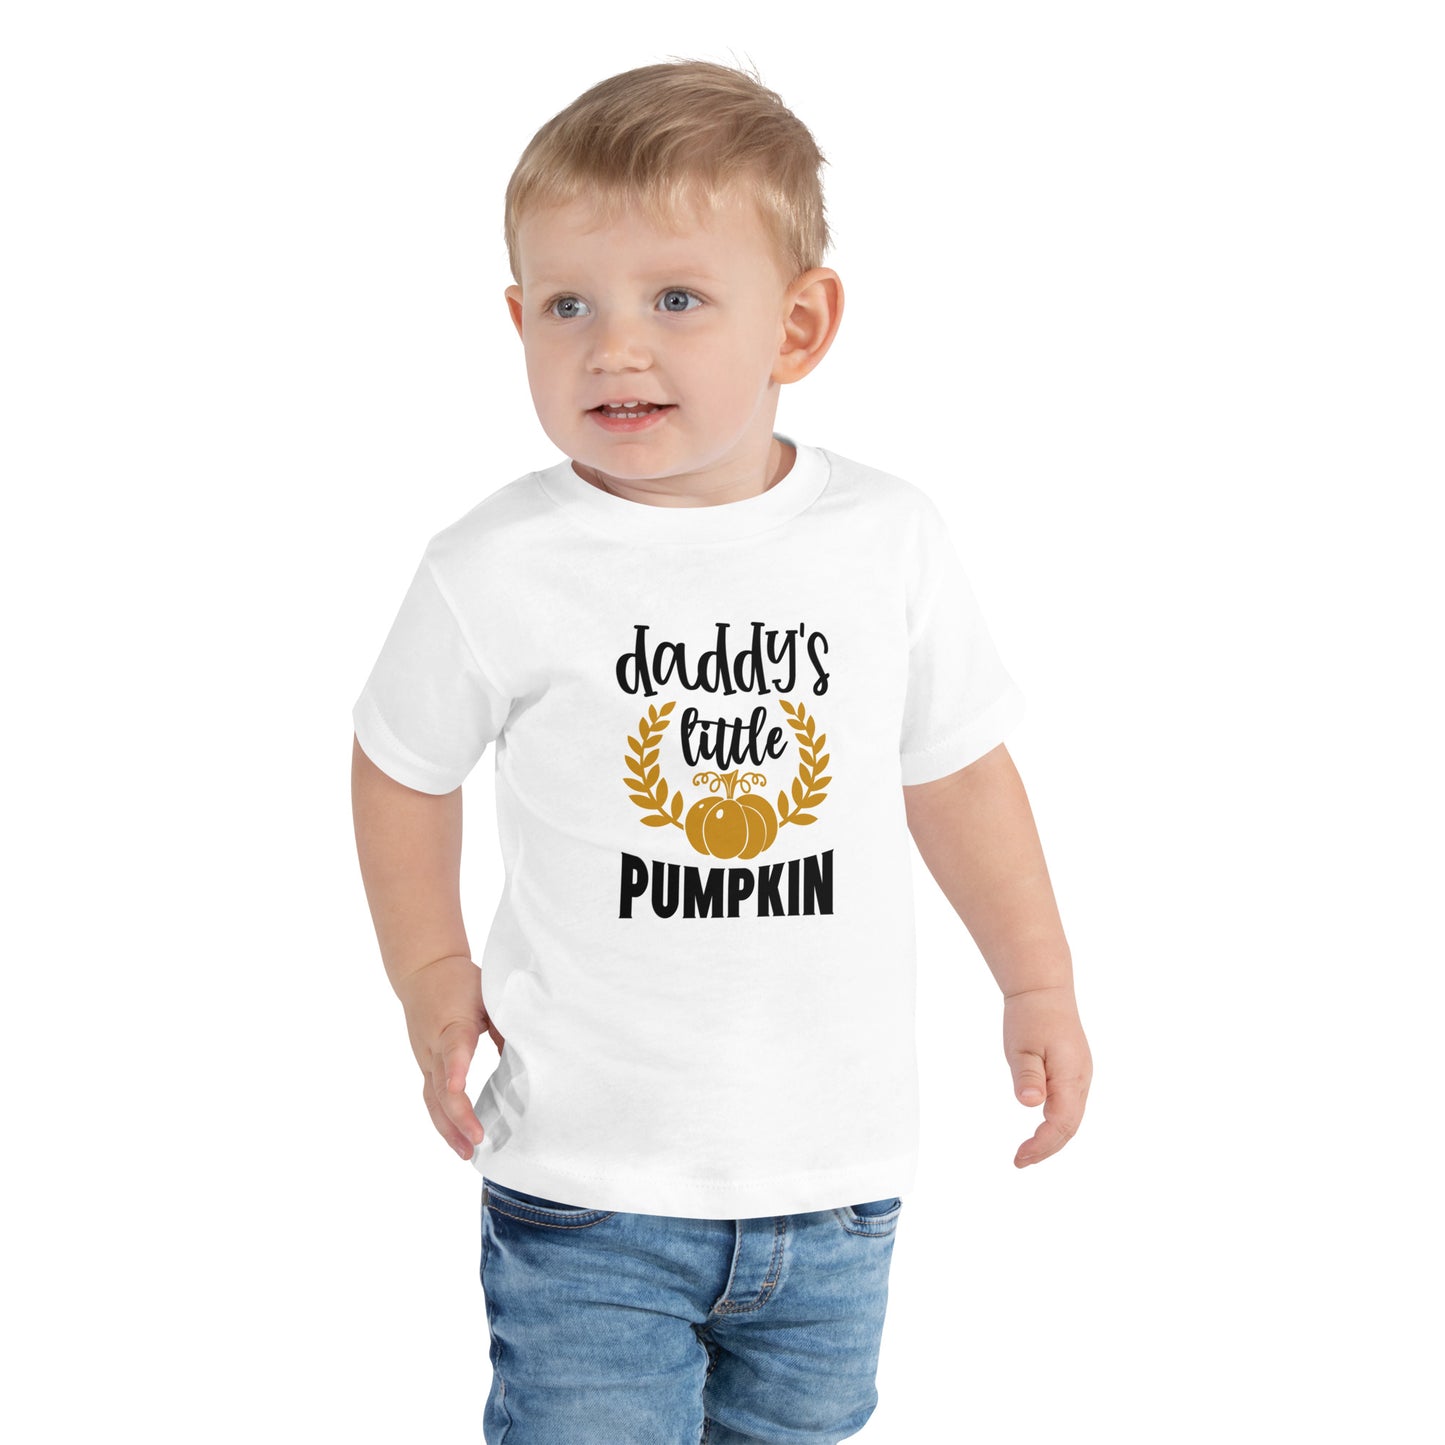 Daddy's Little Pumpkin Toddler T-shirt